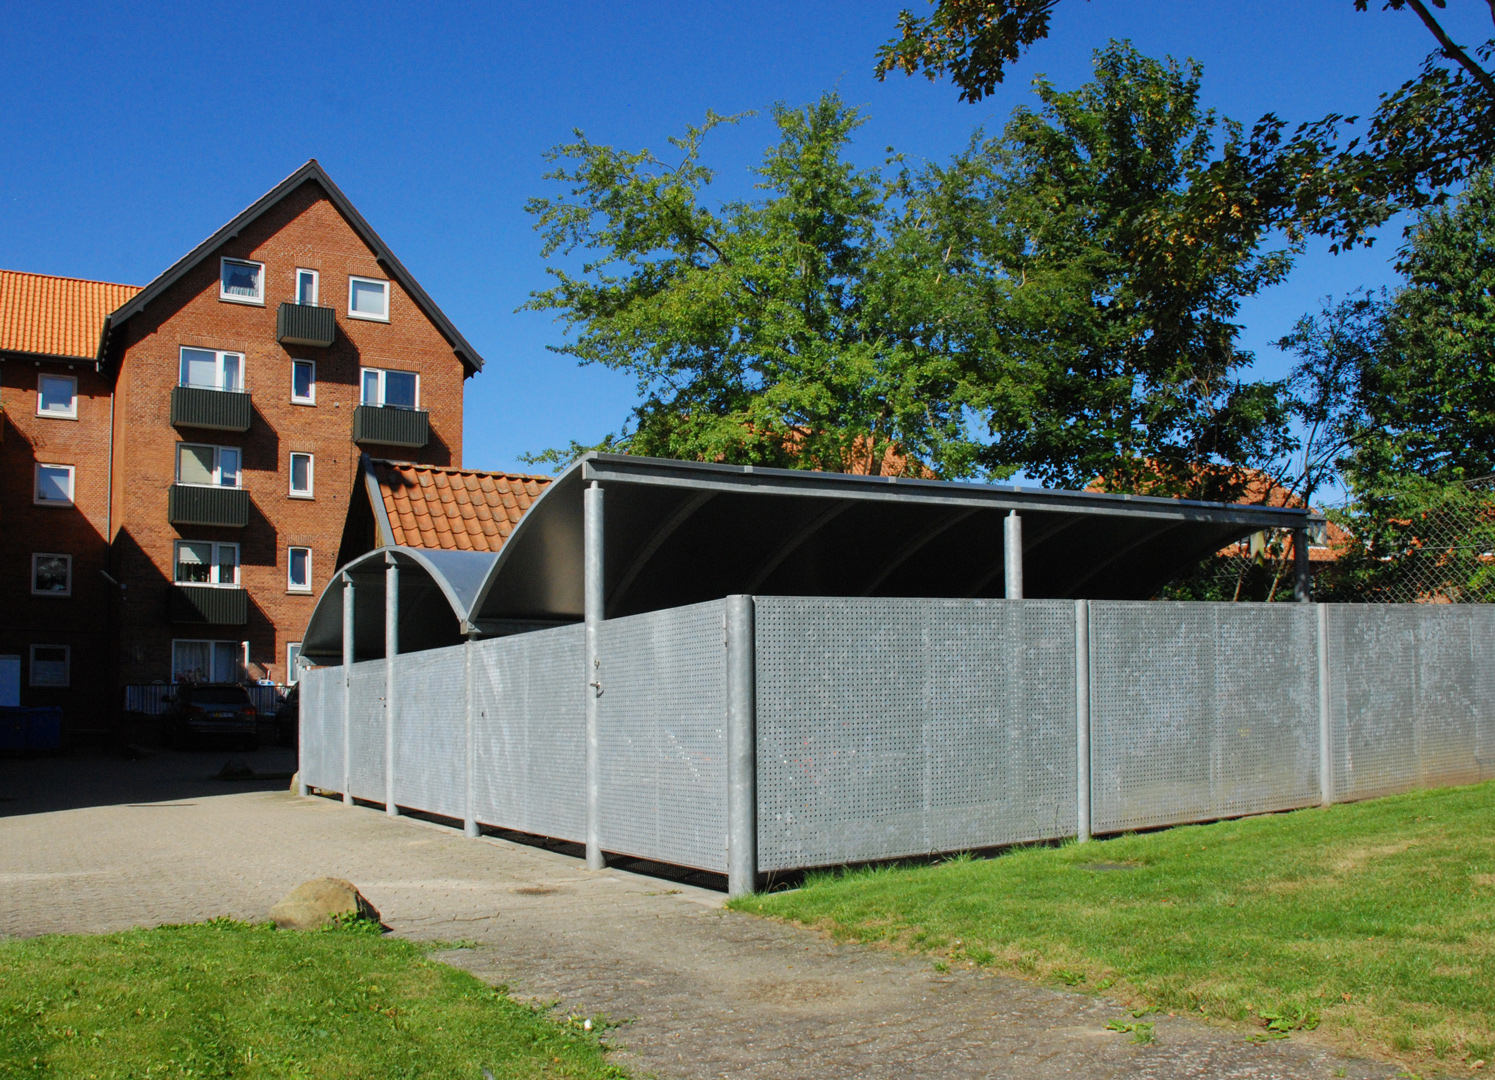 Bin shelter for housing